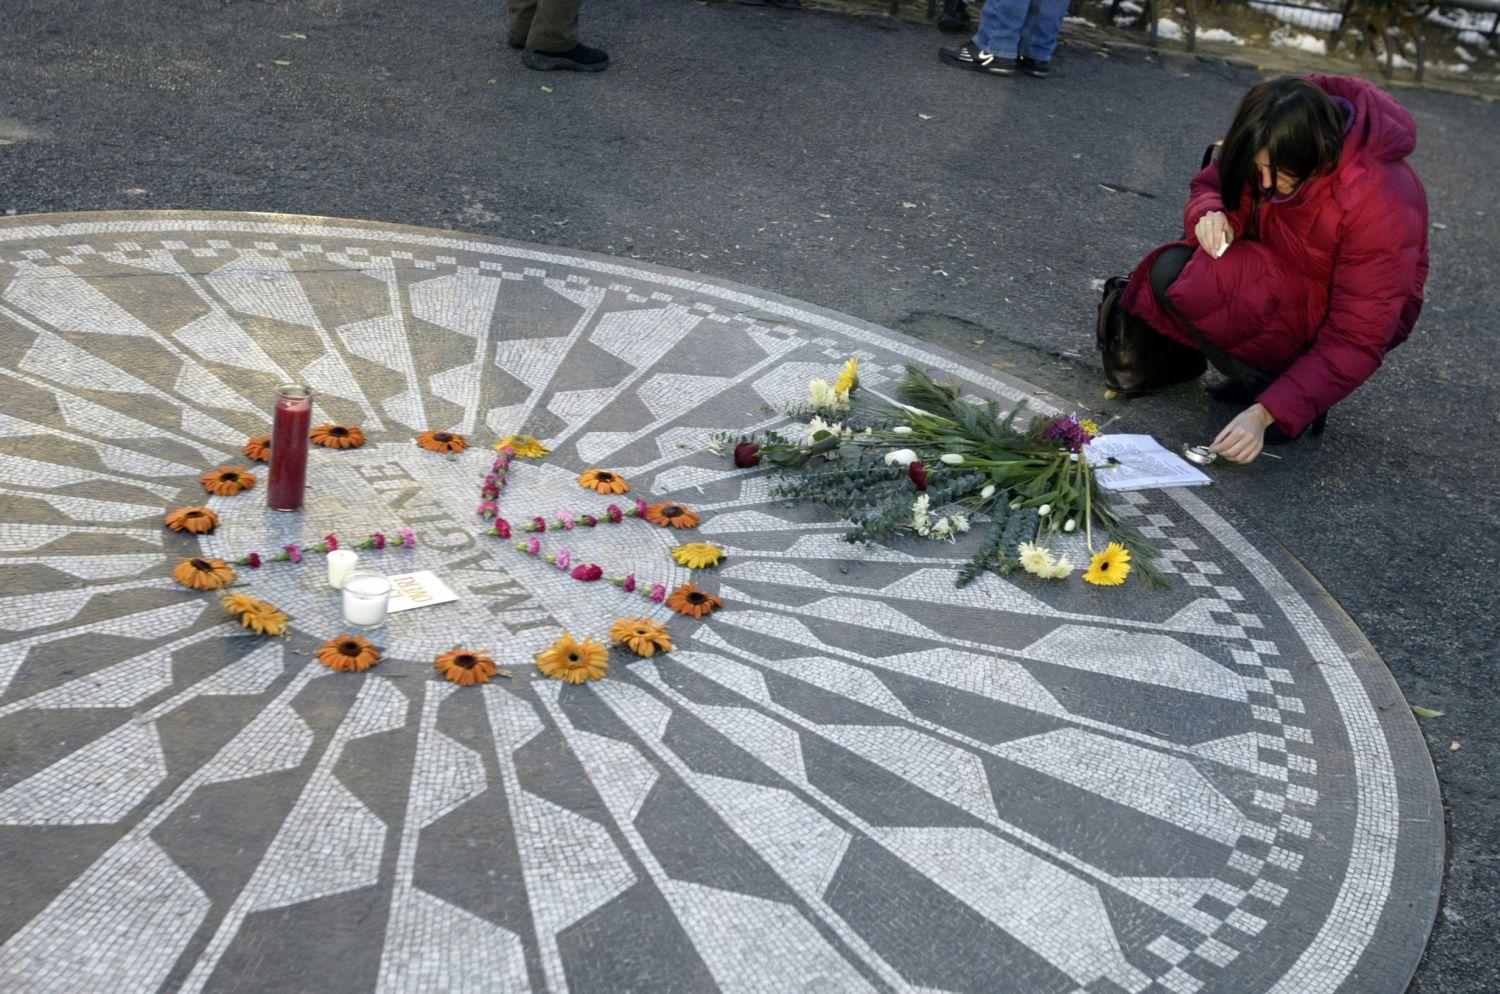 Emlékezés Lennonra a gyilkosság 25. évfordulóján, 2005. december 8-án. Jézus állítólag megbocsátott